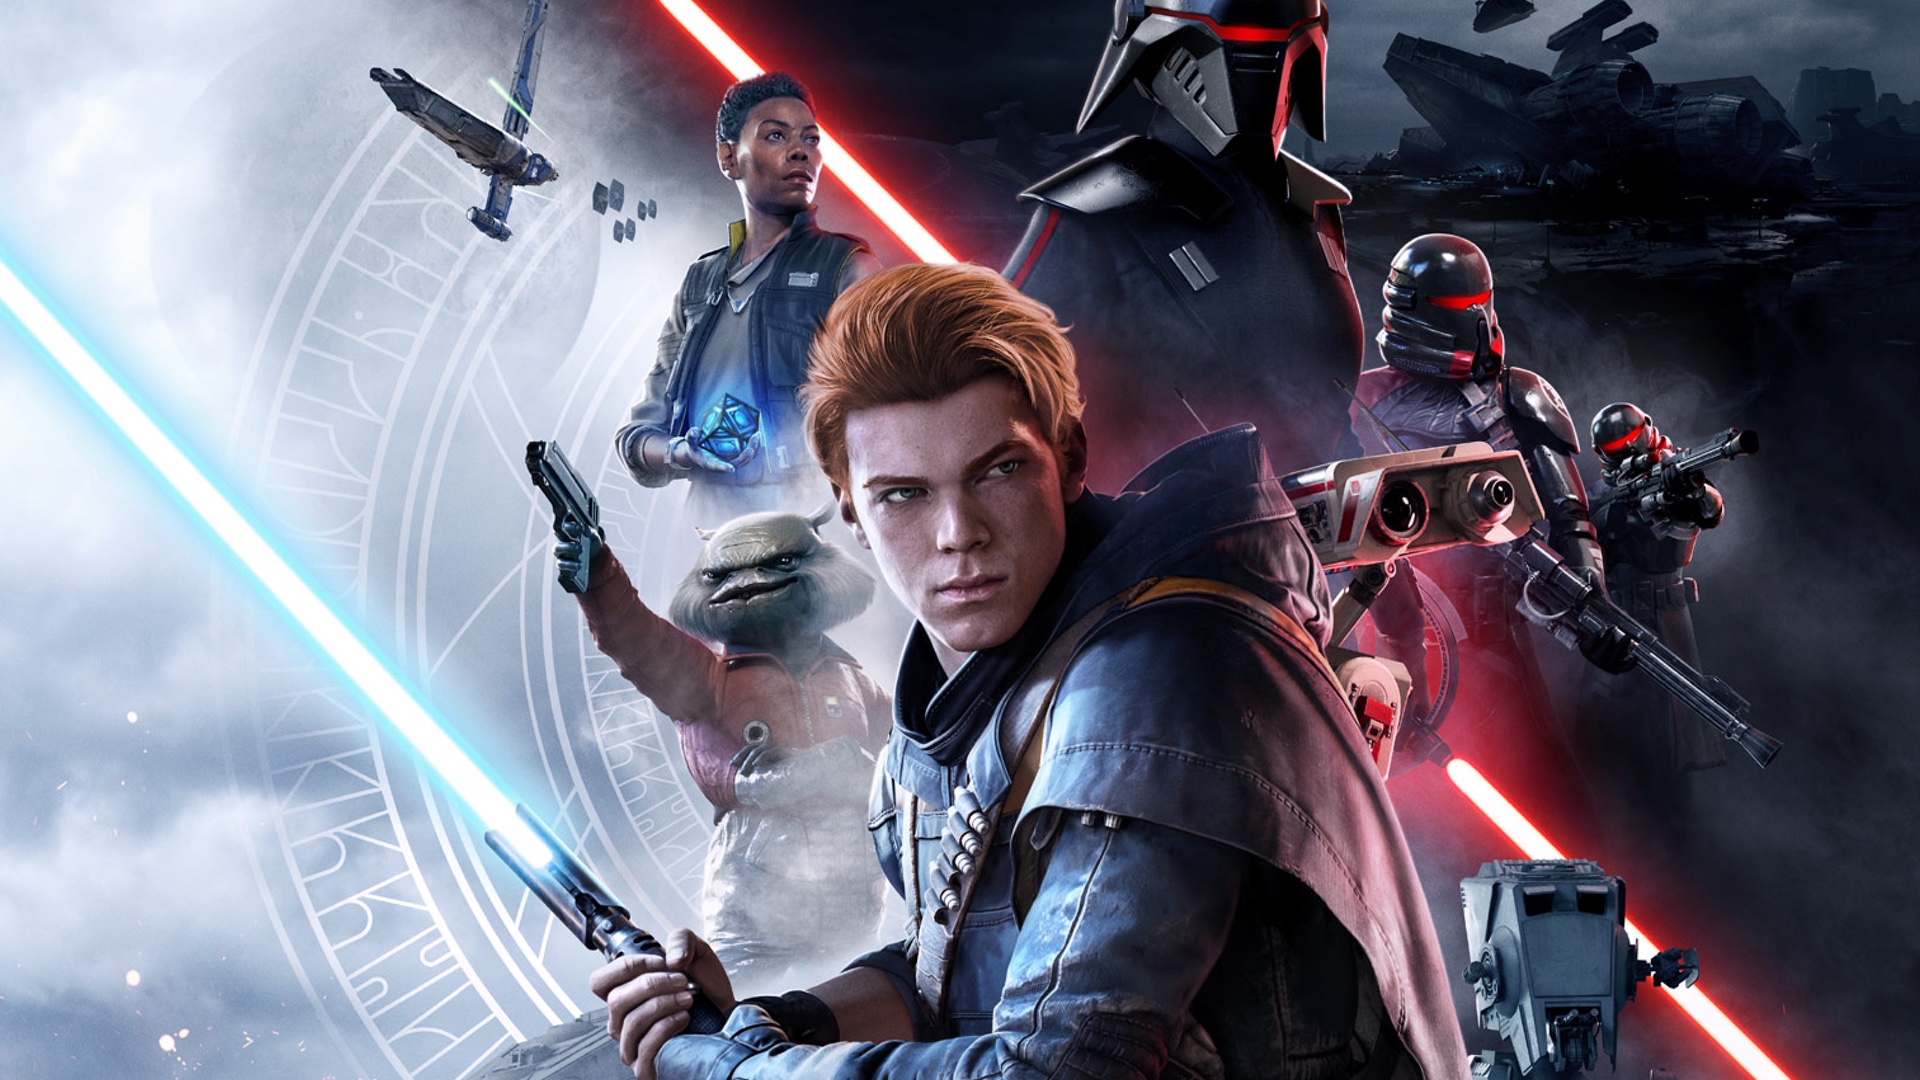 Imagem da ordem caída dos Jedi de Star Wars